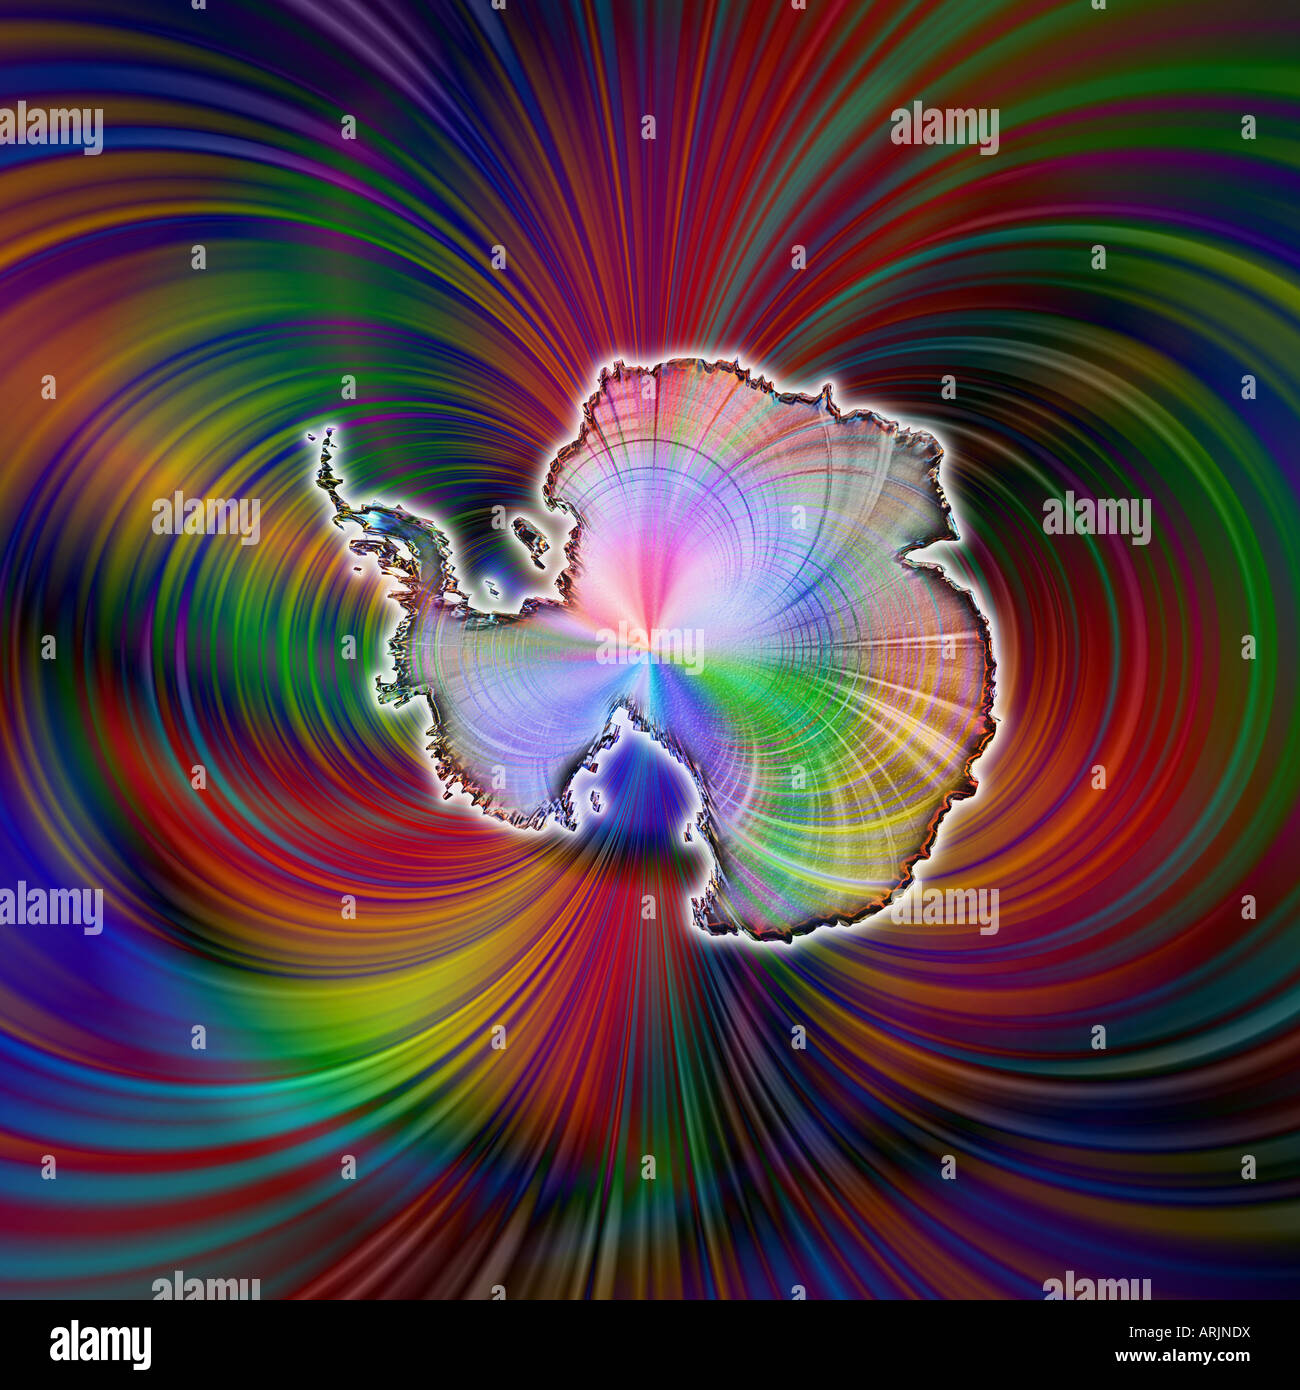 Un rendu stylisé brillant de l'Antarctique flottant dans une sombre mais imaginaire riche champ de force magnétique Banque D'Images